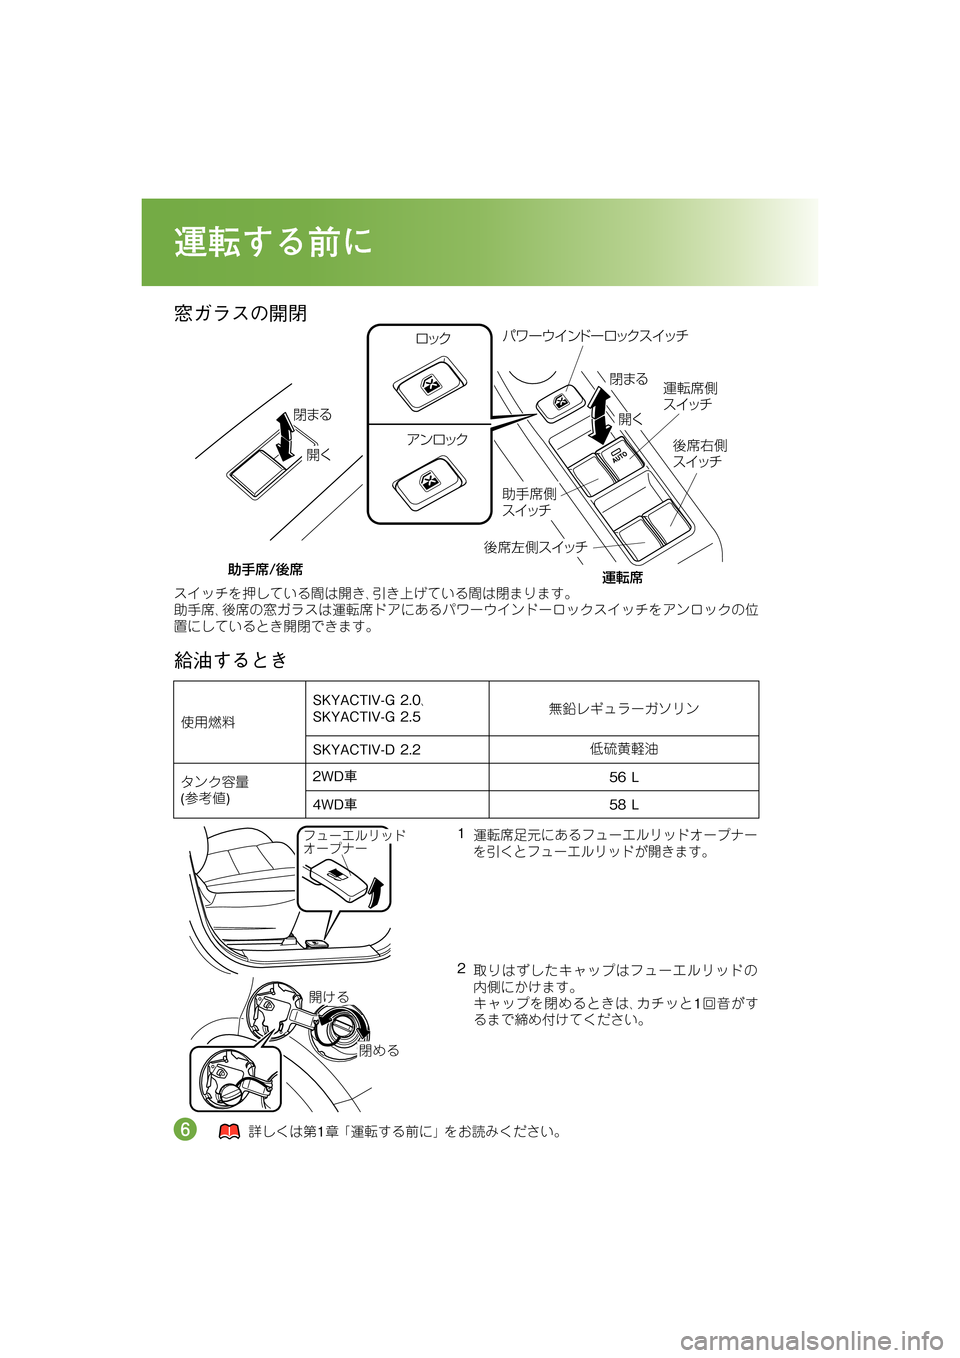 MAZDA MODEL CX-5 2012  取扱説明書 (in Japanese) HXo^]6<
oJ=o
4?Ì�
4=ü�
á8
n 		
n�™
n
™
nÈ
µ ¿½ á8
n
µ ¿½
‡”
‰X
™
n(µ ¿½
		
n
µ ¿½
Íë”¢ �